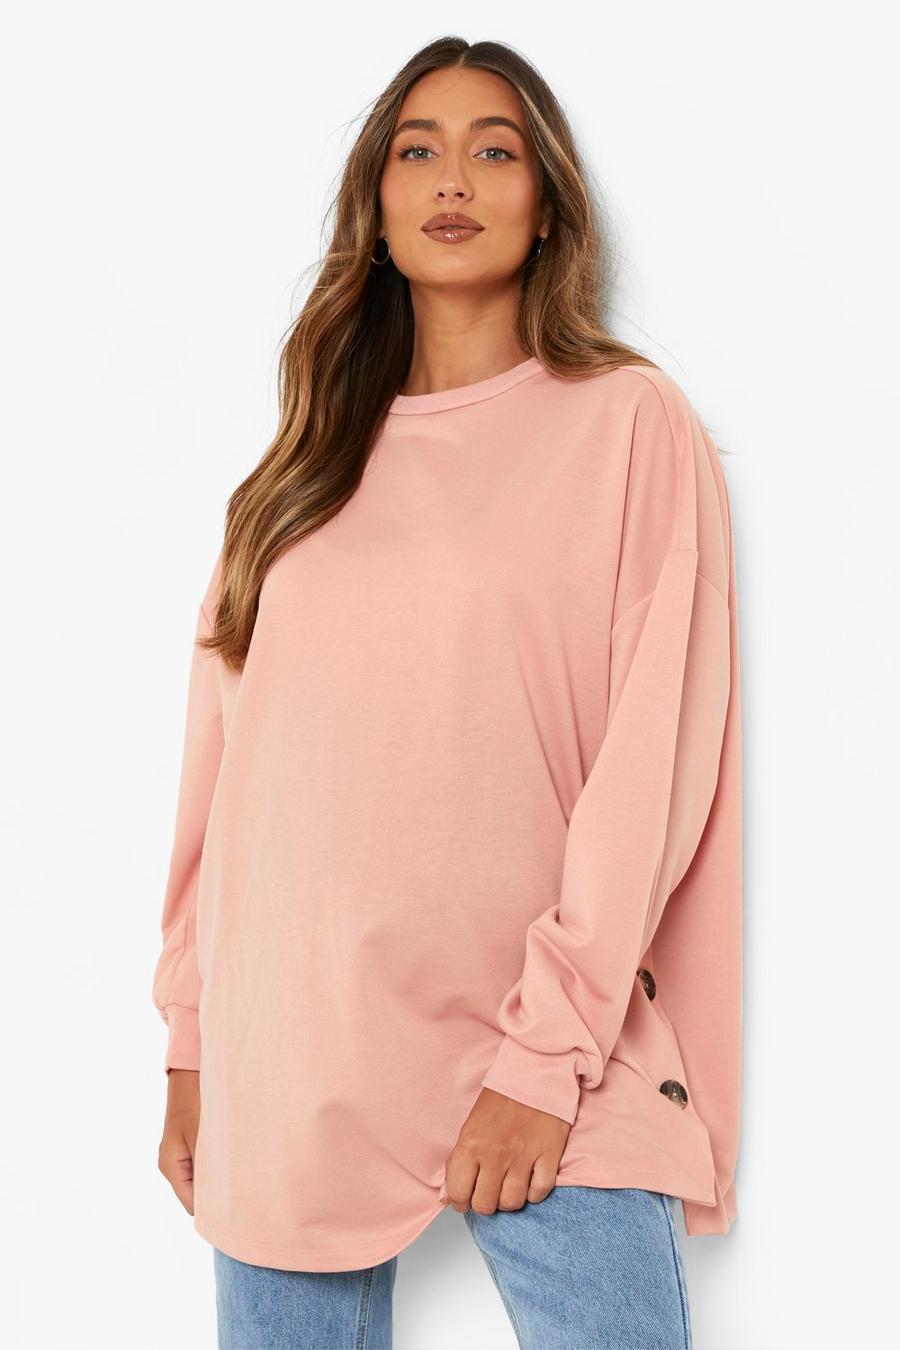 Umstandsmode Still-Sweatshirt mit seitlichen Knöpfen, Dusky pink